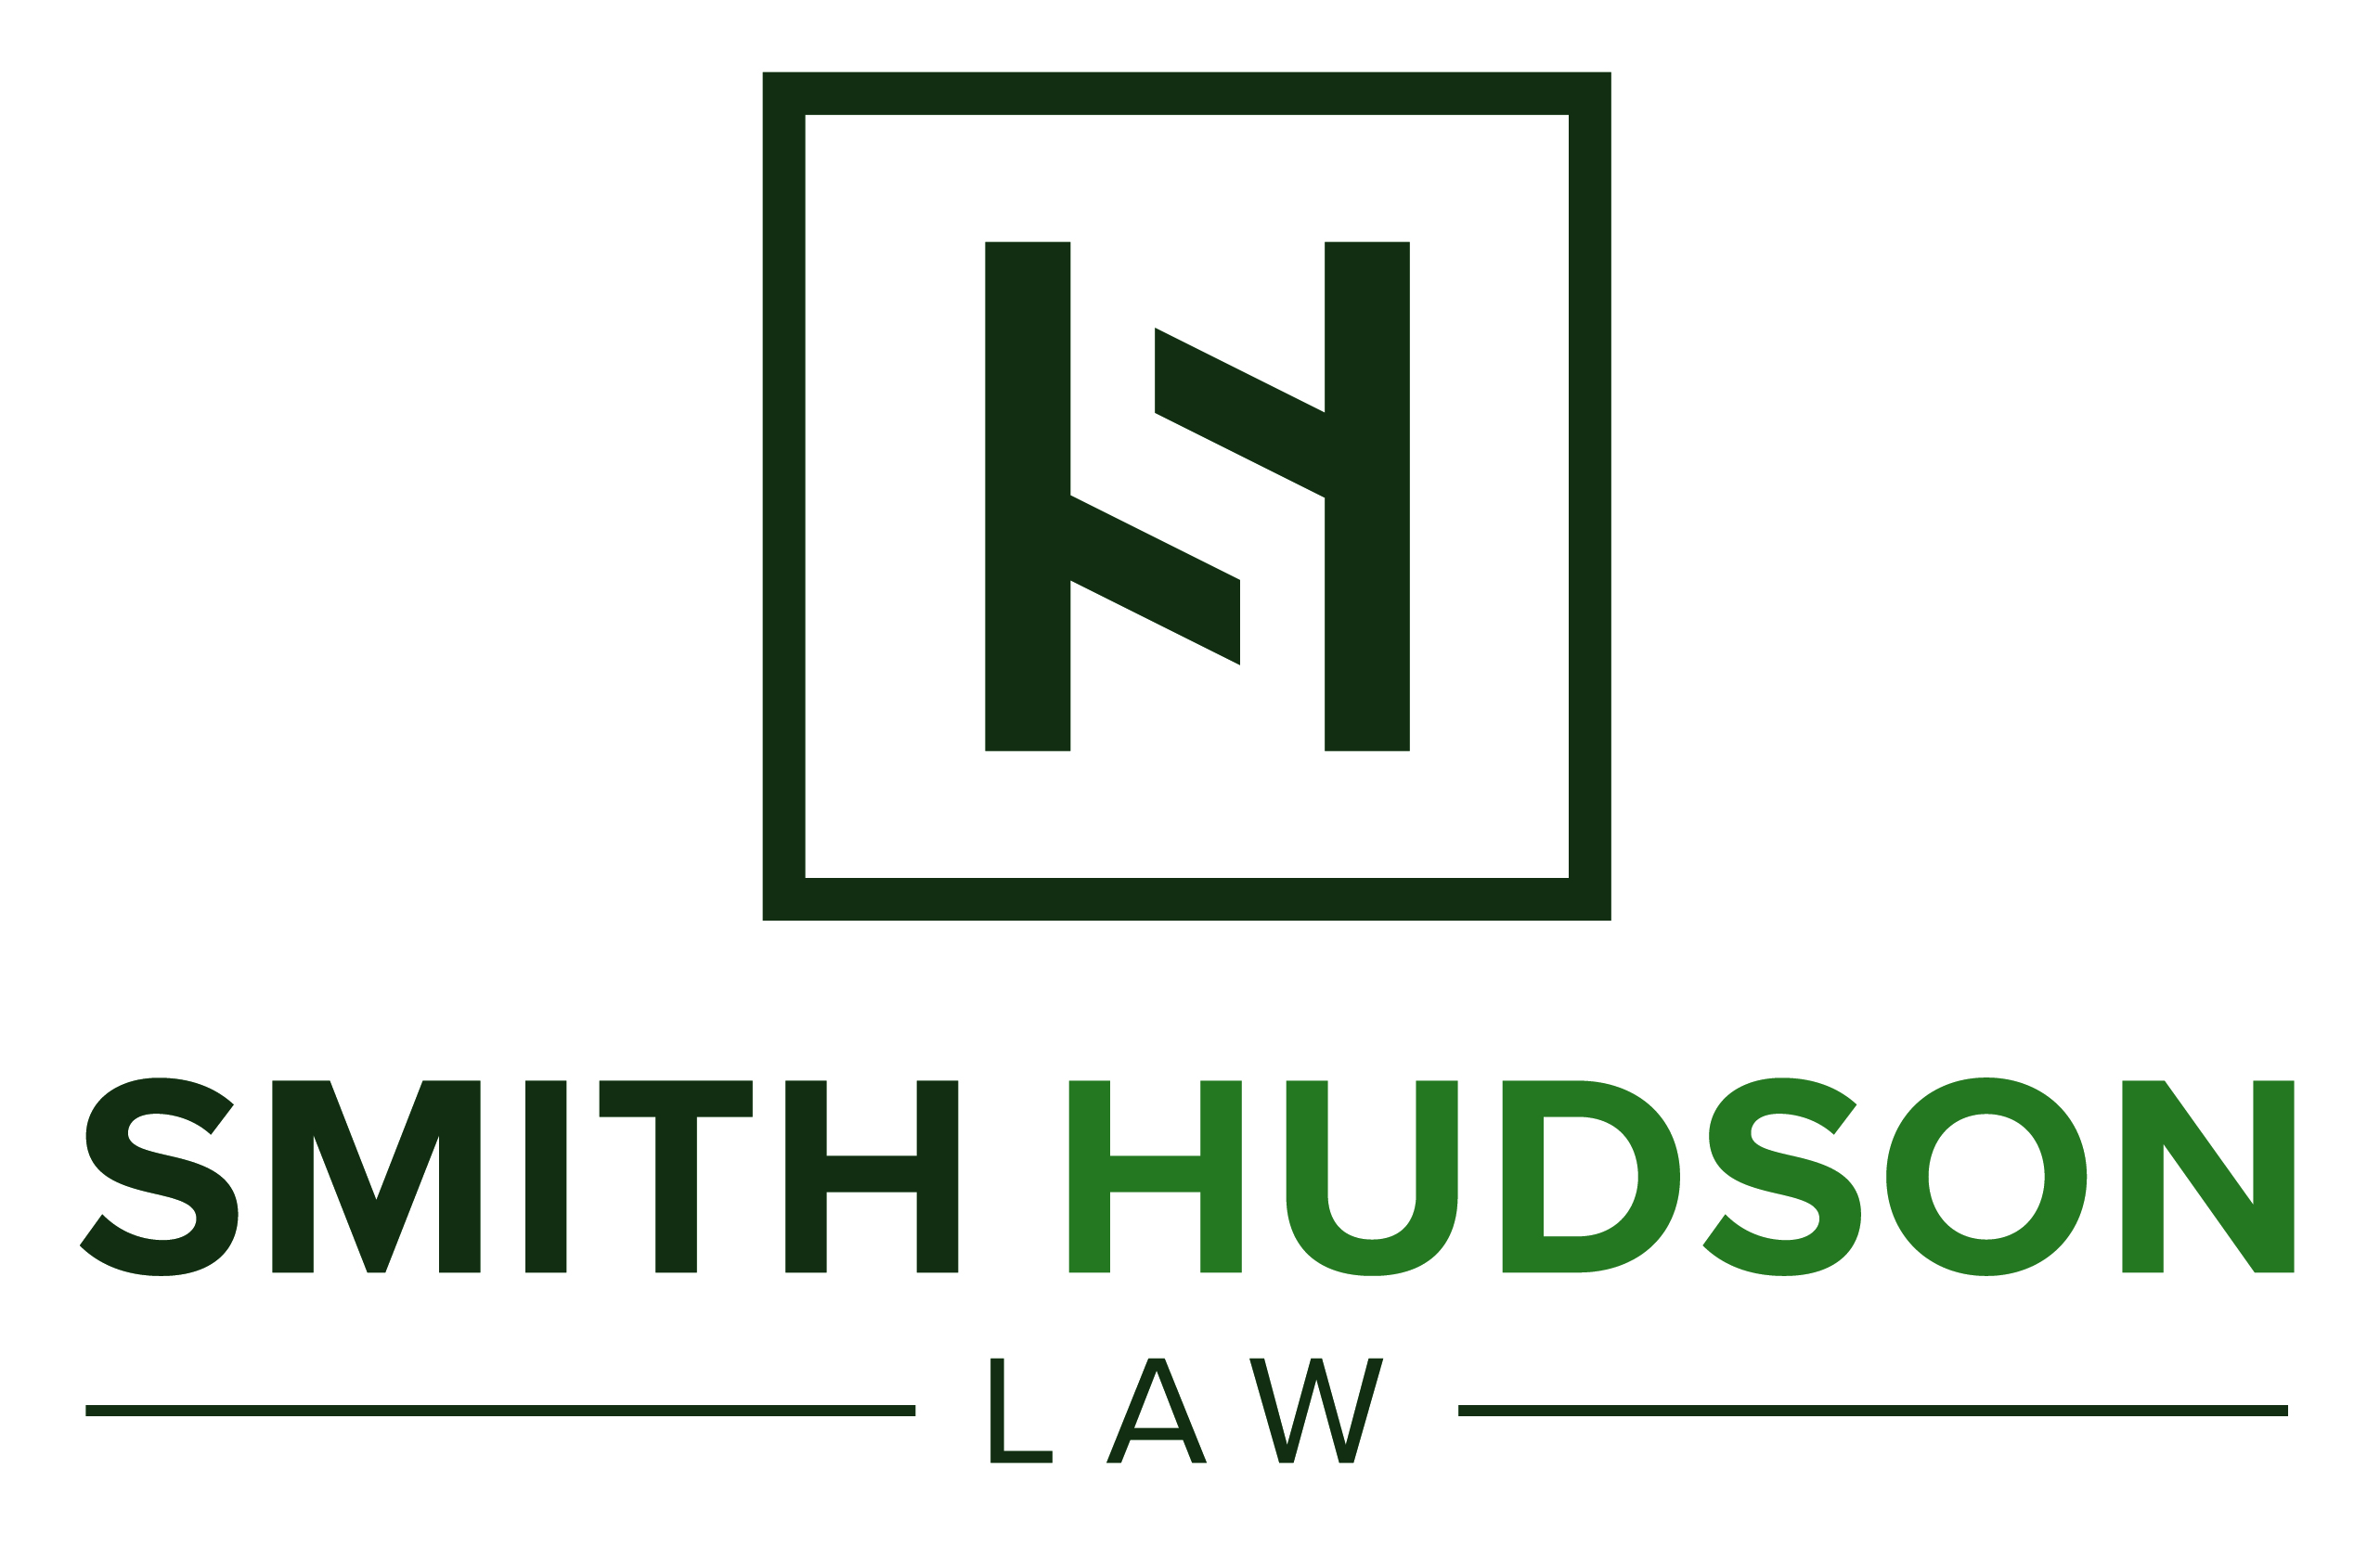 Smith Hudson Law, LLC